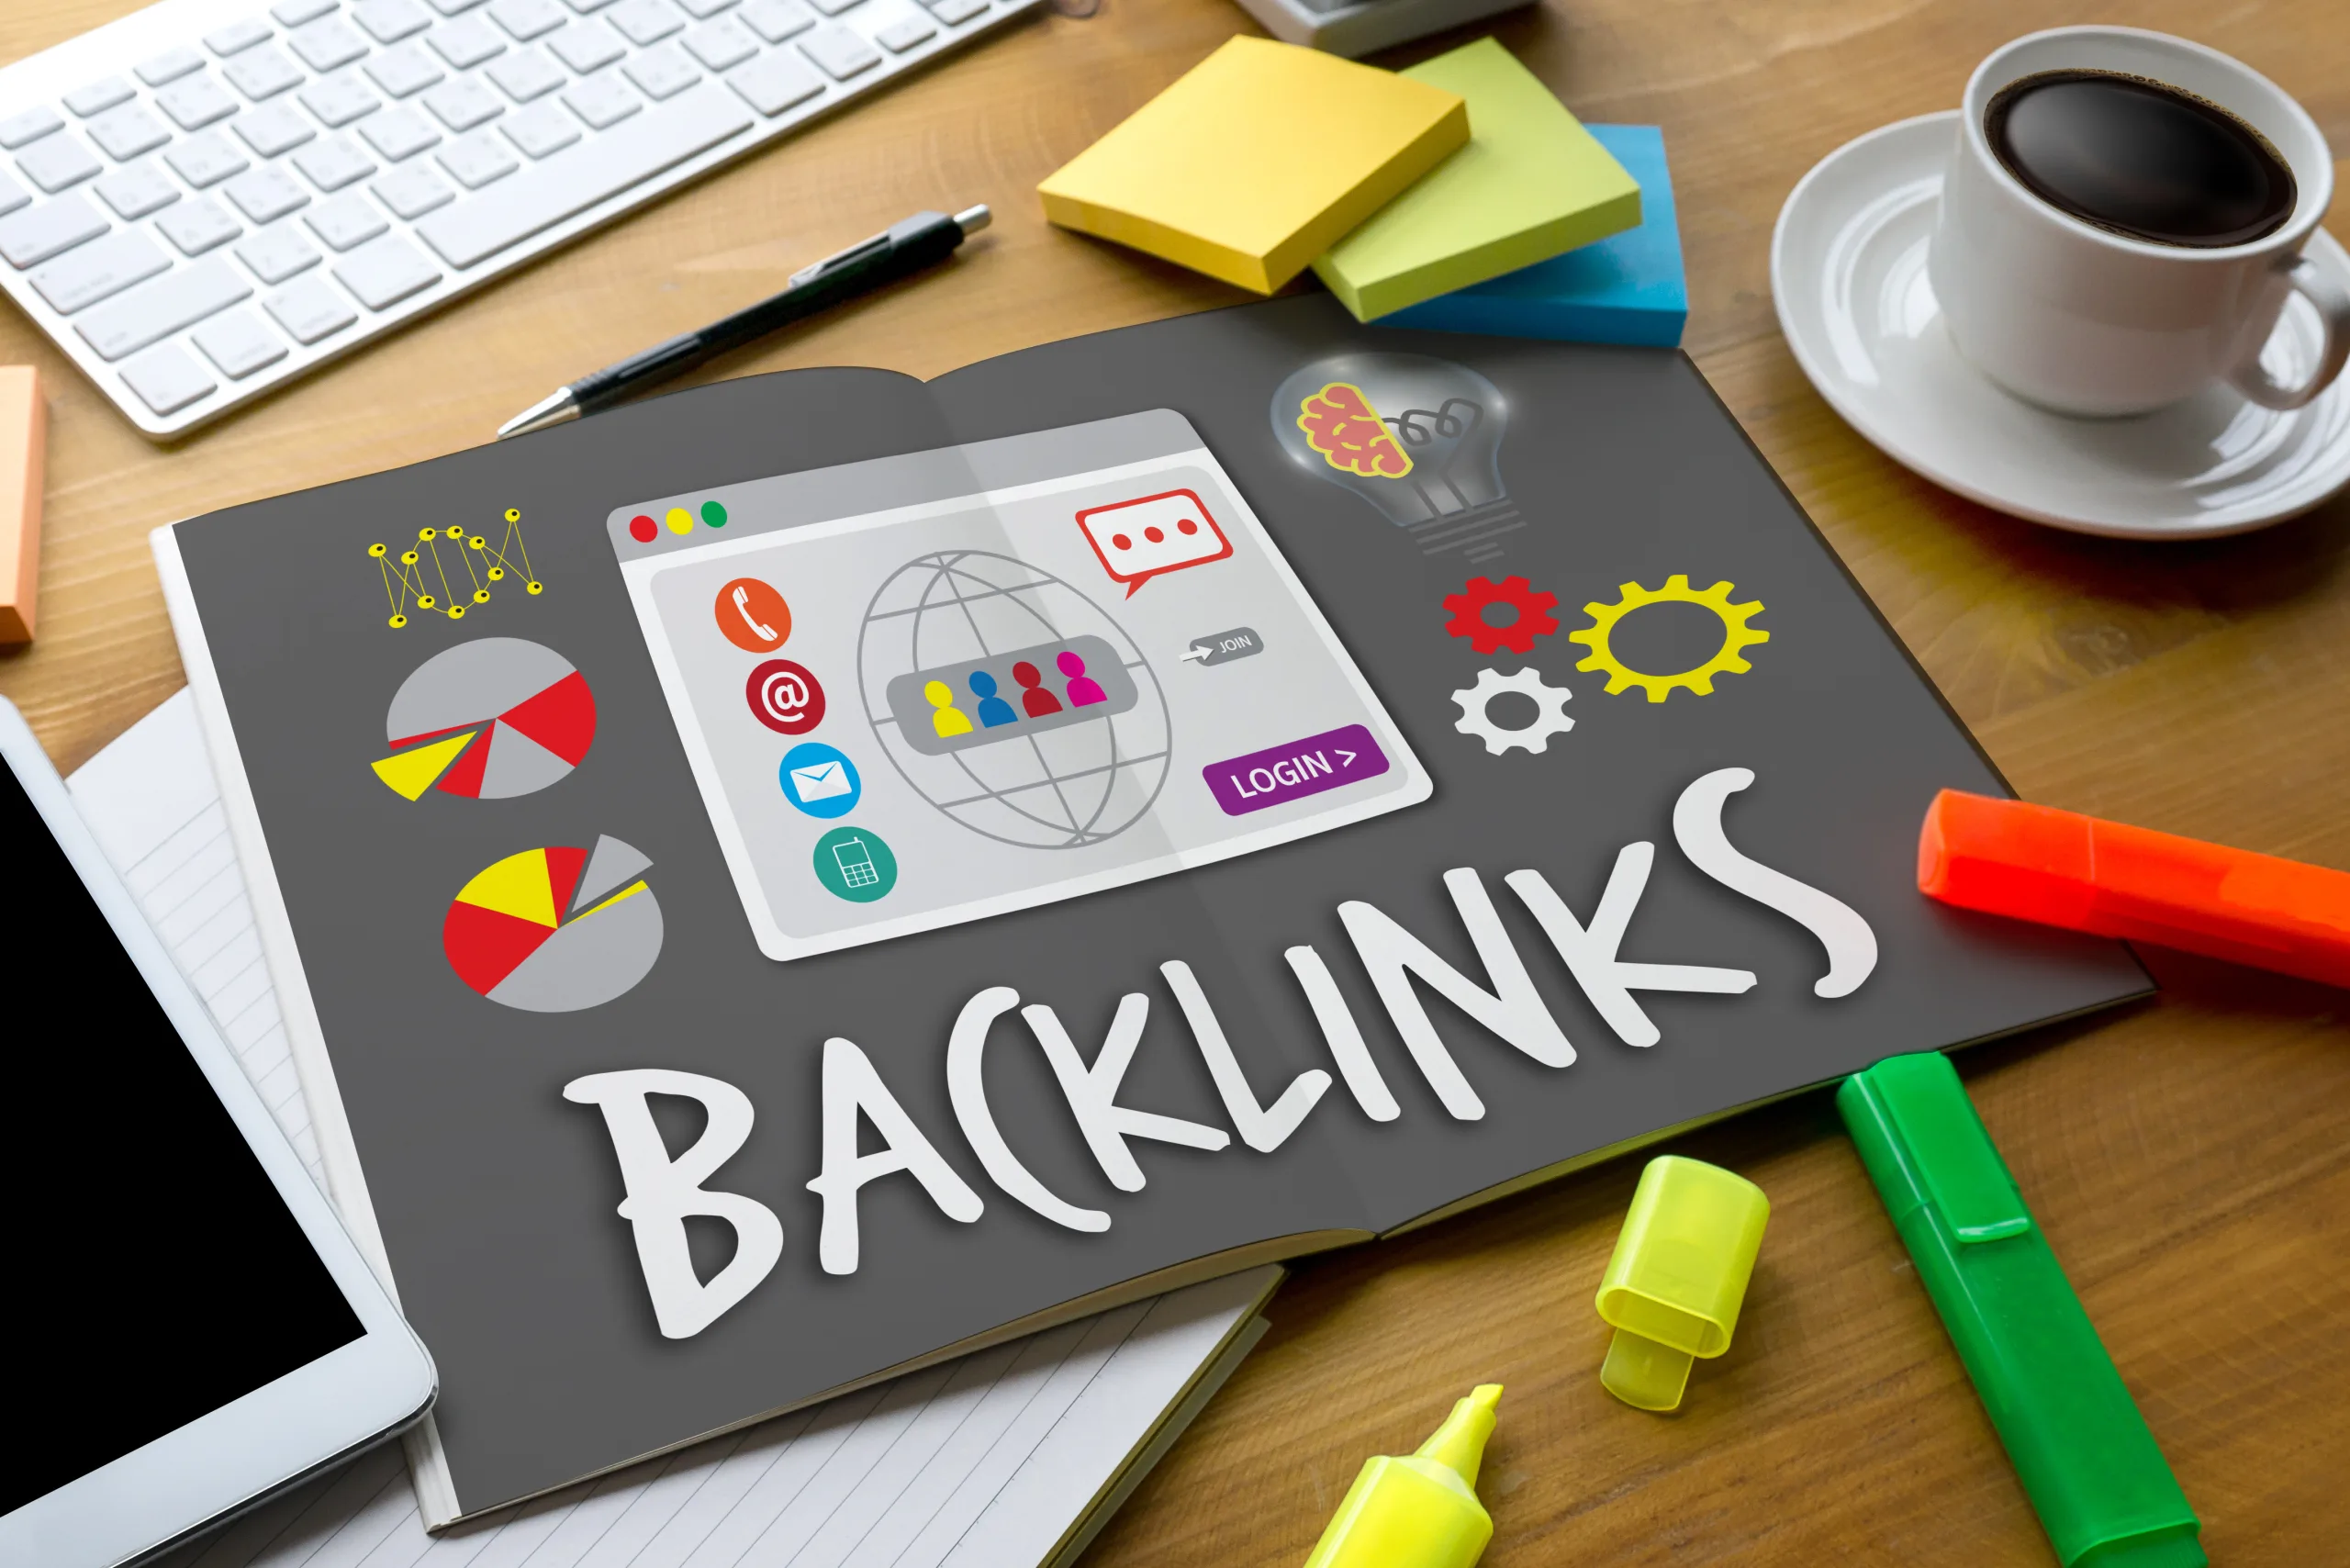 Ücretsiz Backlink: Web Sitenizin Sıralamasını Yükseltin